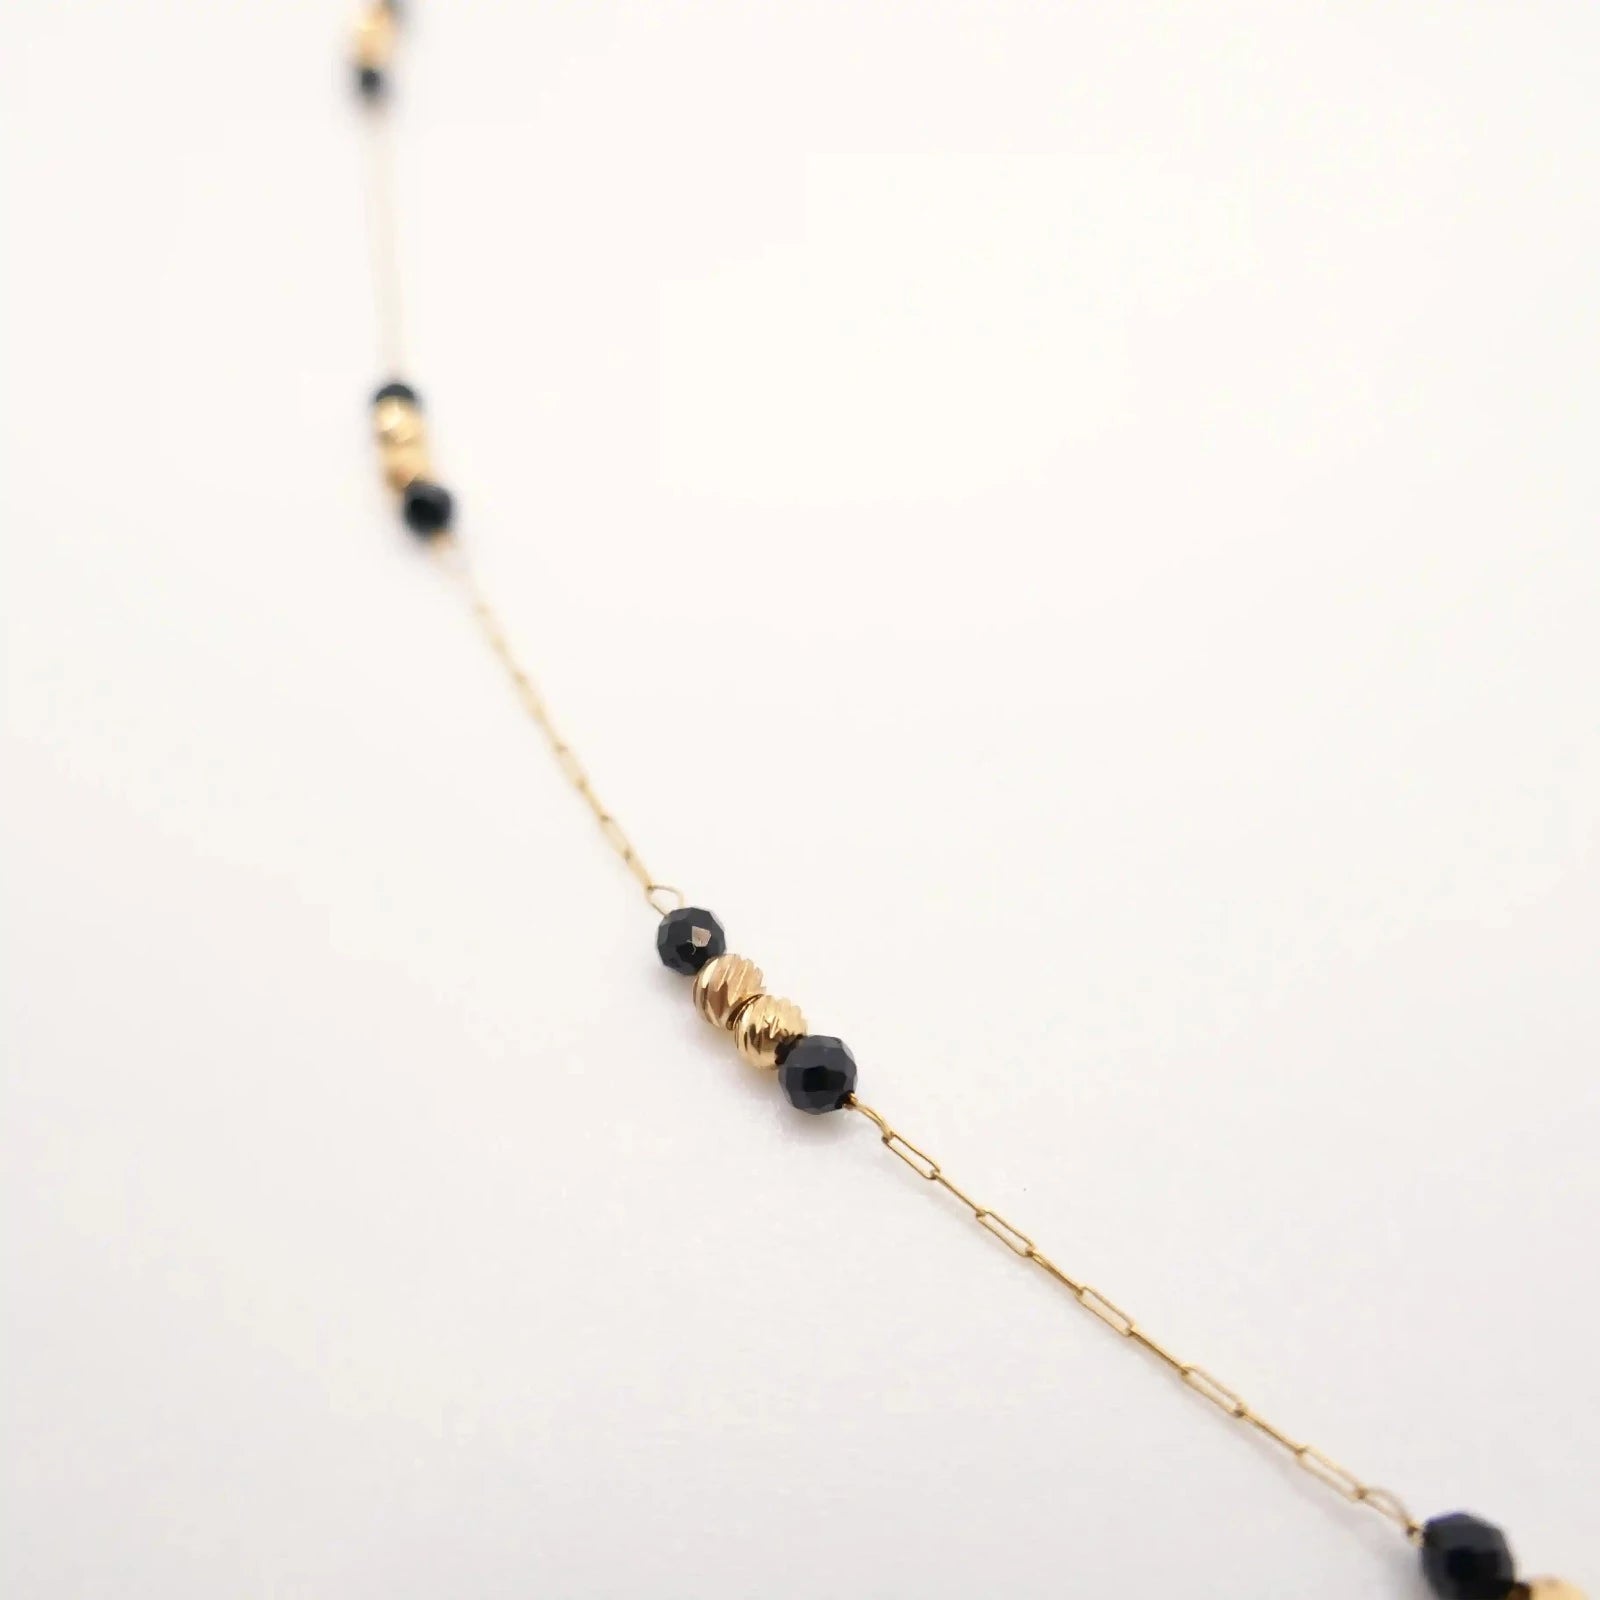 fin collier or de 45 cm en maille chaînée avec perles d'Agate noire